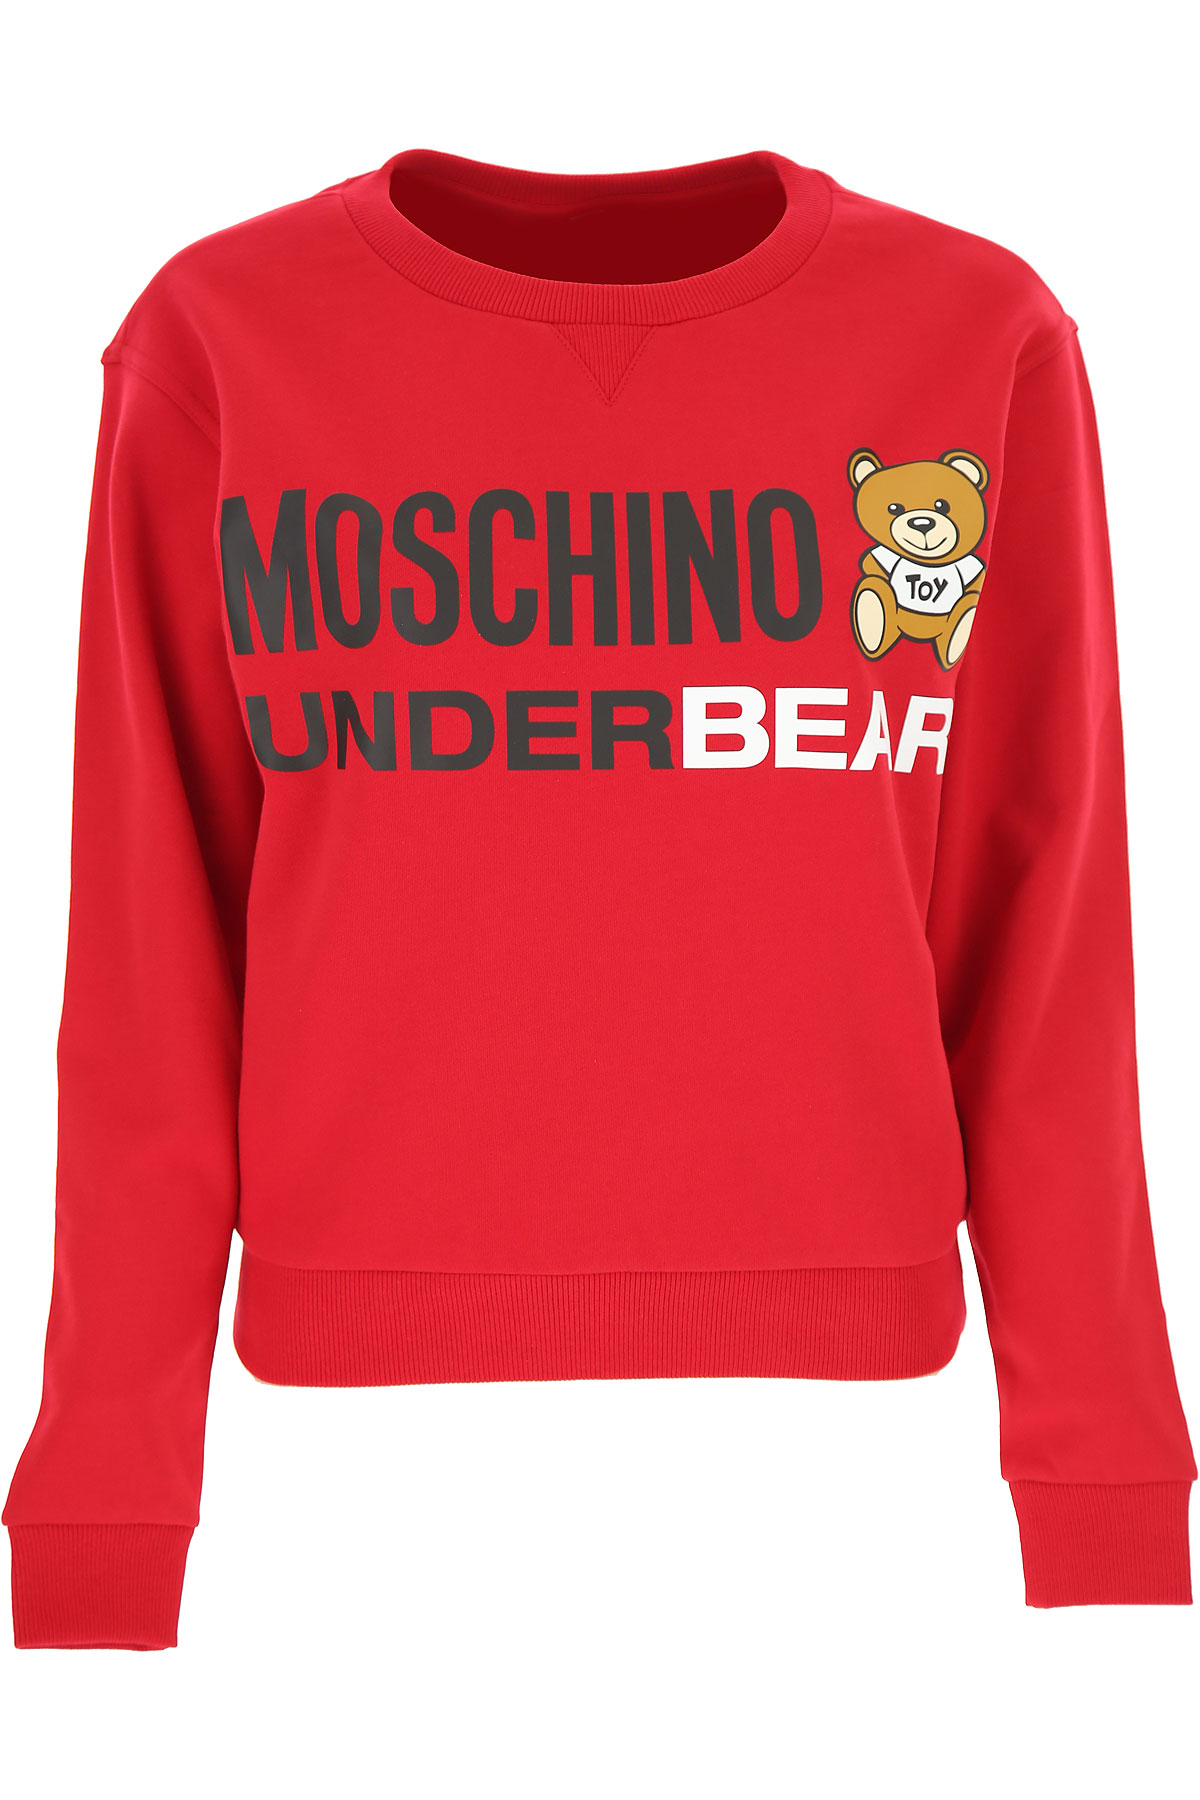 Moschino Sweatshirt für Damen, Kapuzenpulli, Hoodie, Sweats Günstig im Sale, Rot, Baumwolle, 2017, 44 M